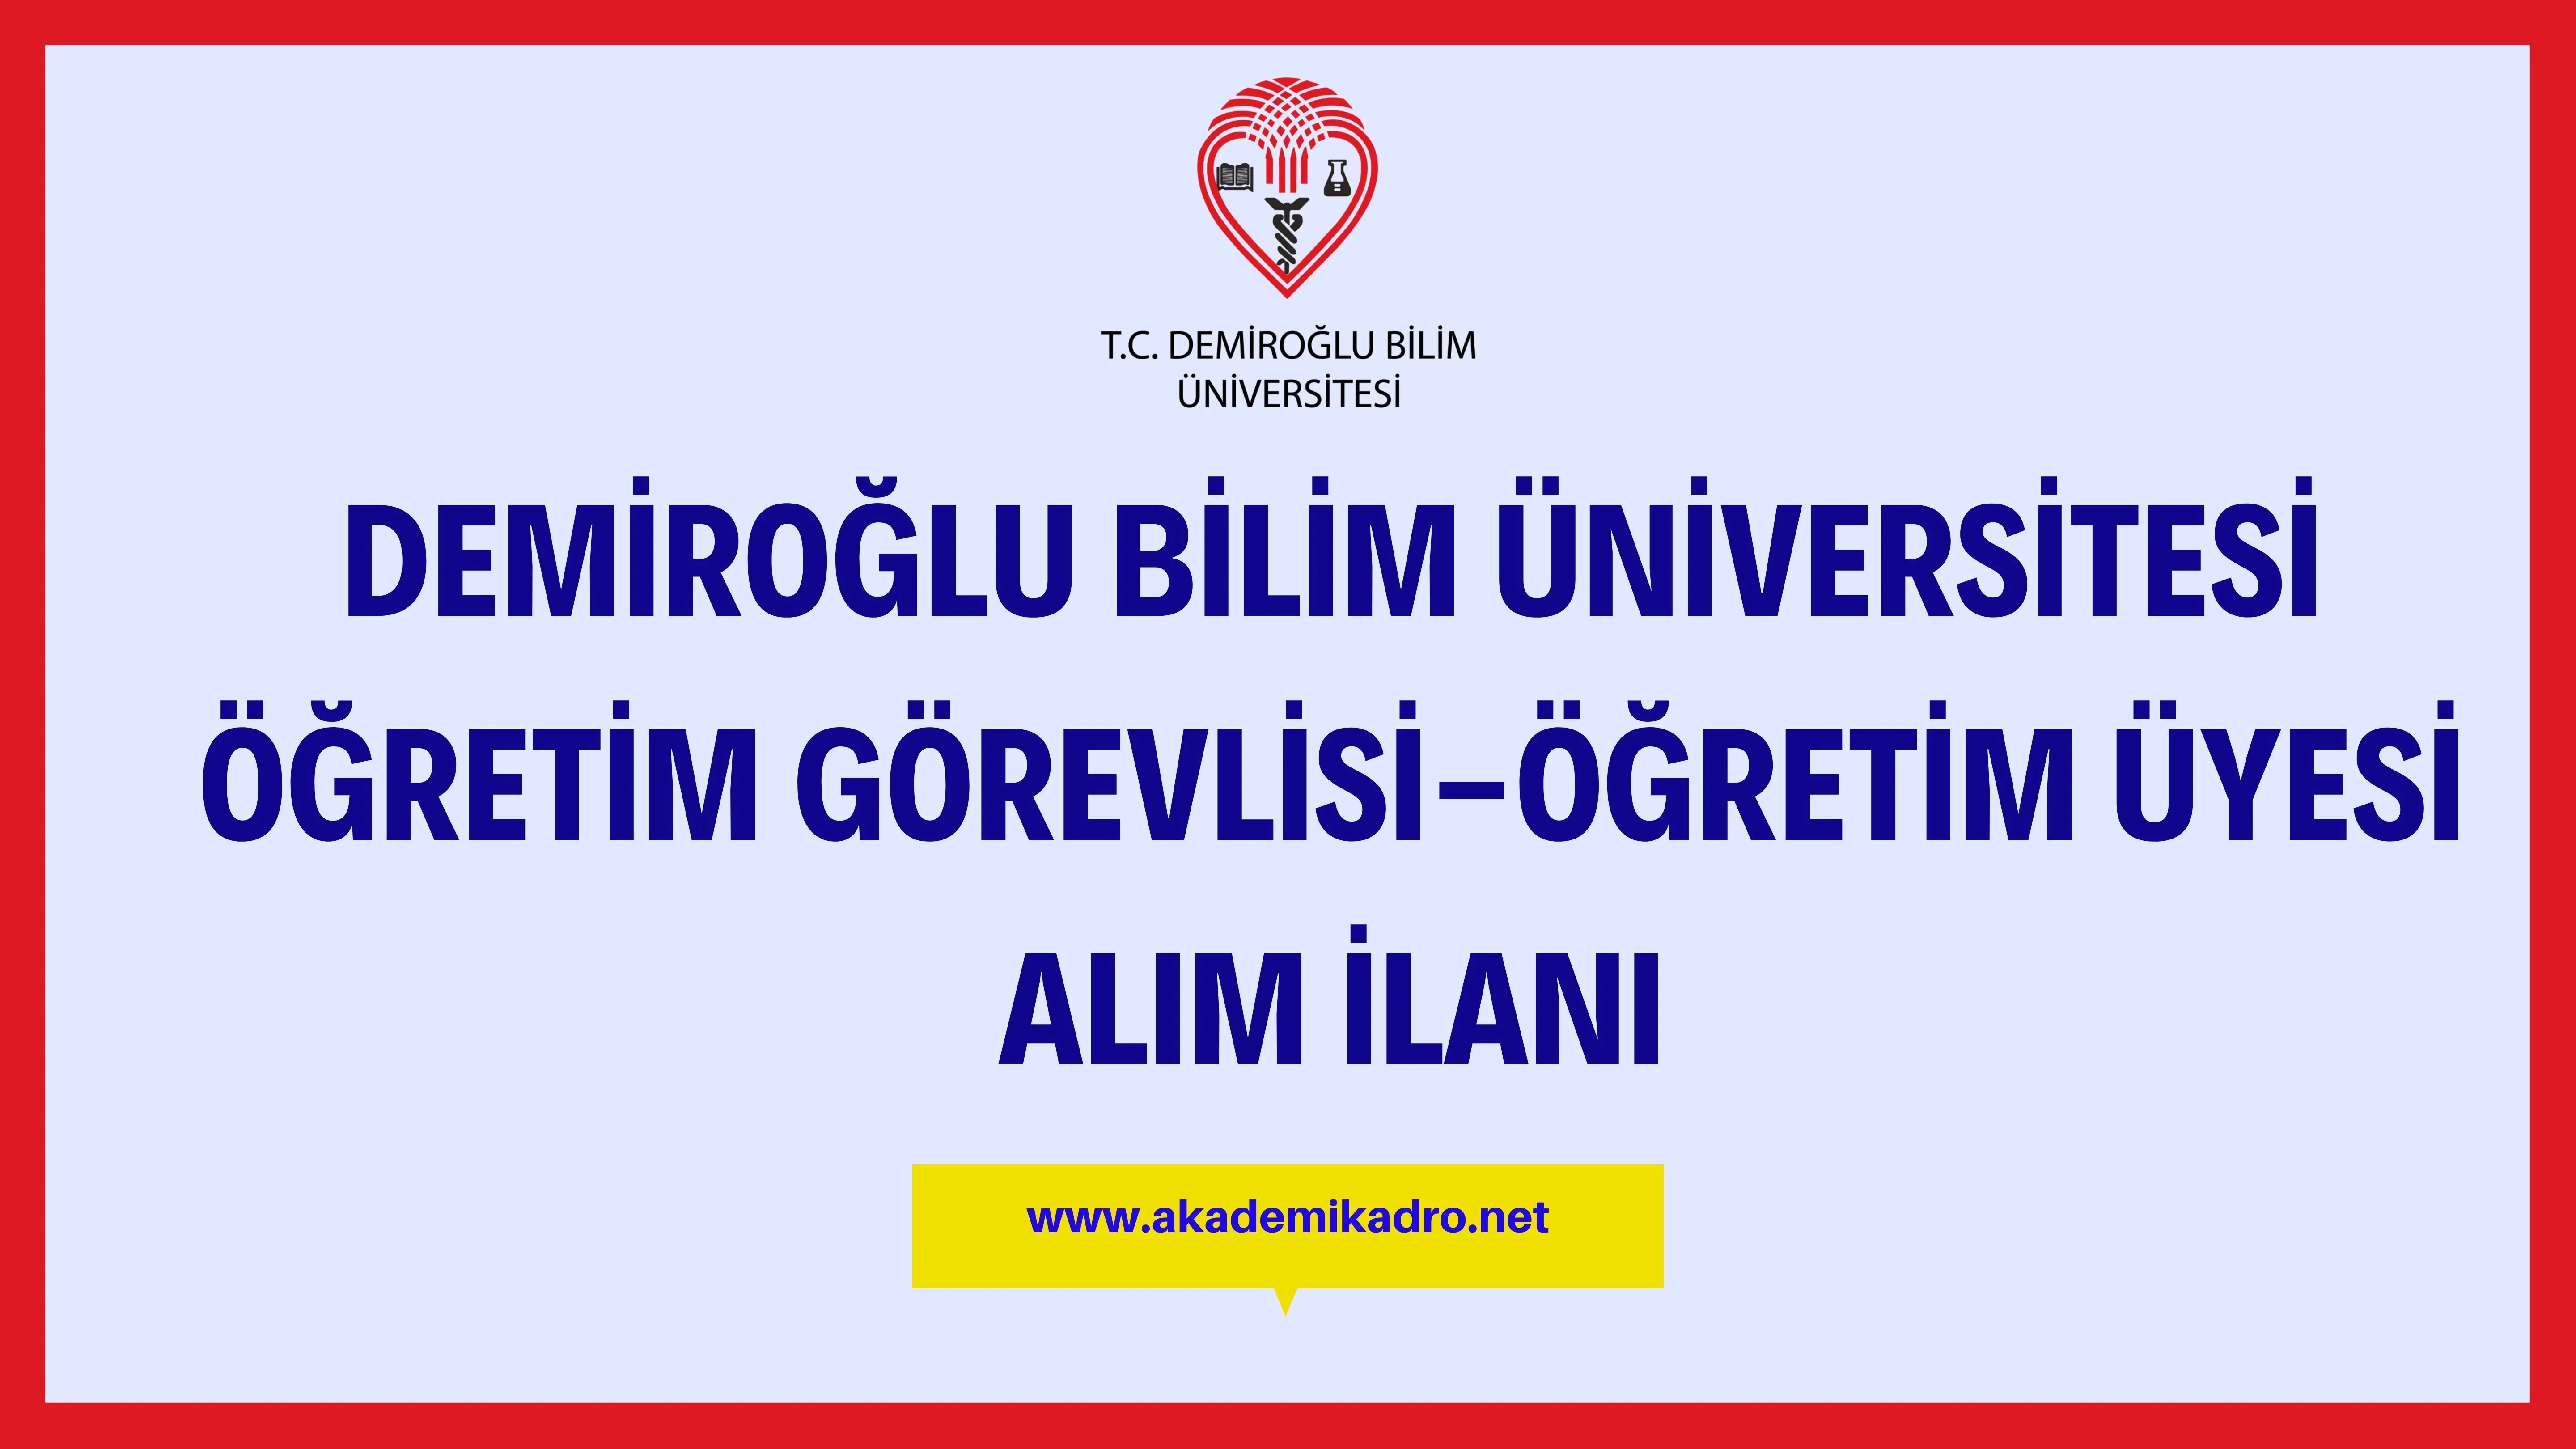 Demiroğlu Bilim Üniversitesi 5 Öğretim görevlisi ve 17 öğretim üyesi alacak.